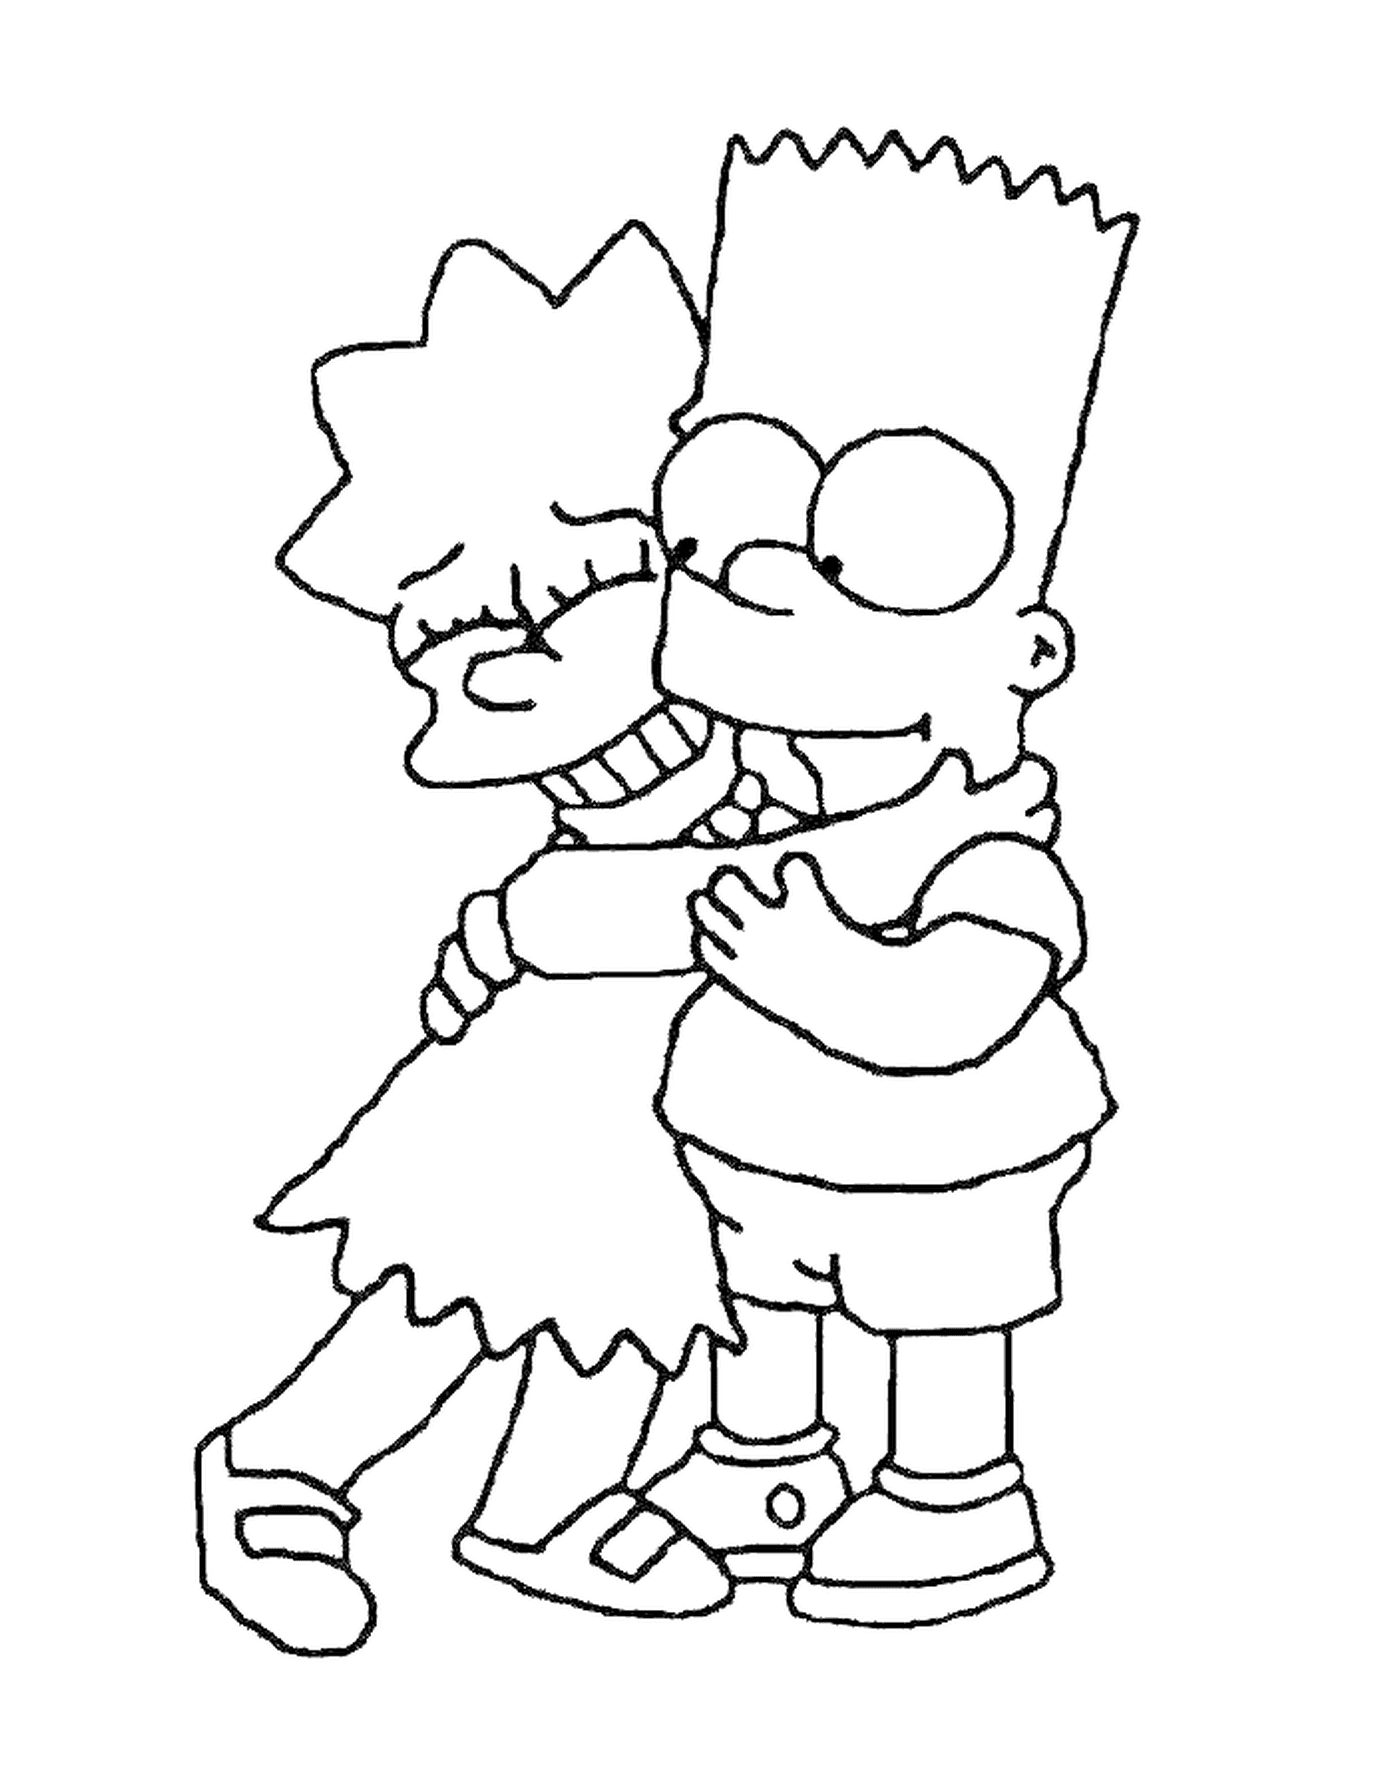   Bart et Lisa font un câlin, garçon qui serre une fille dans ses bras 